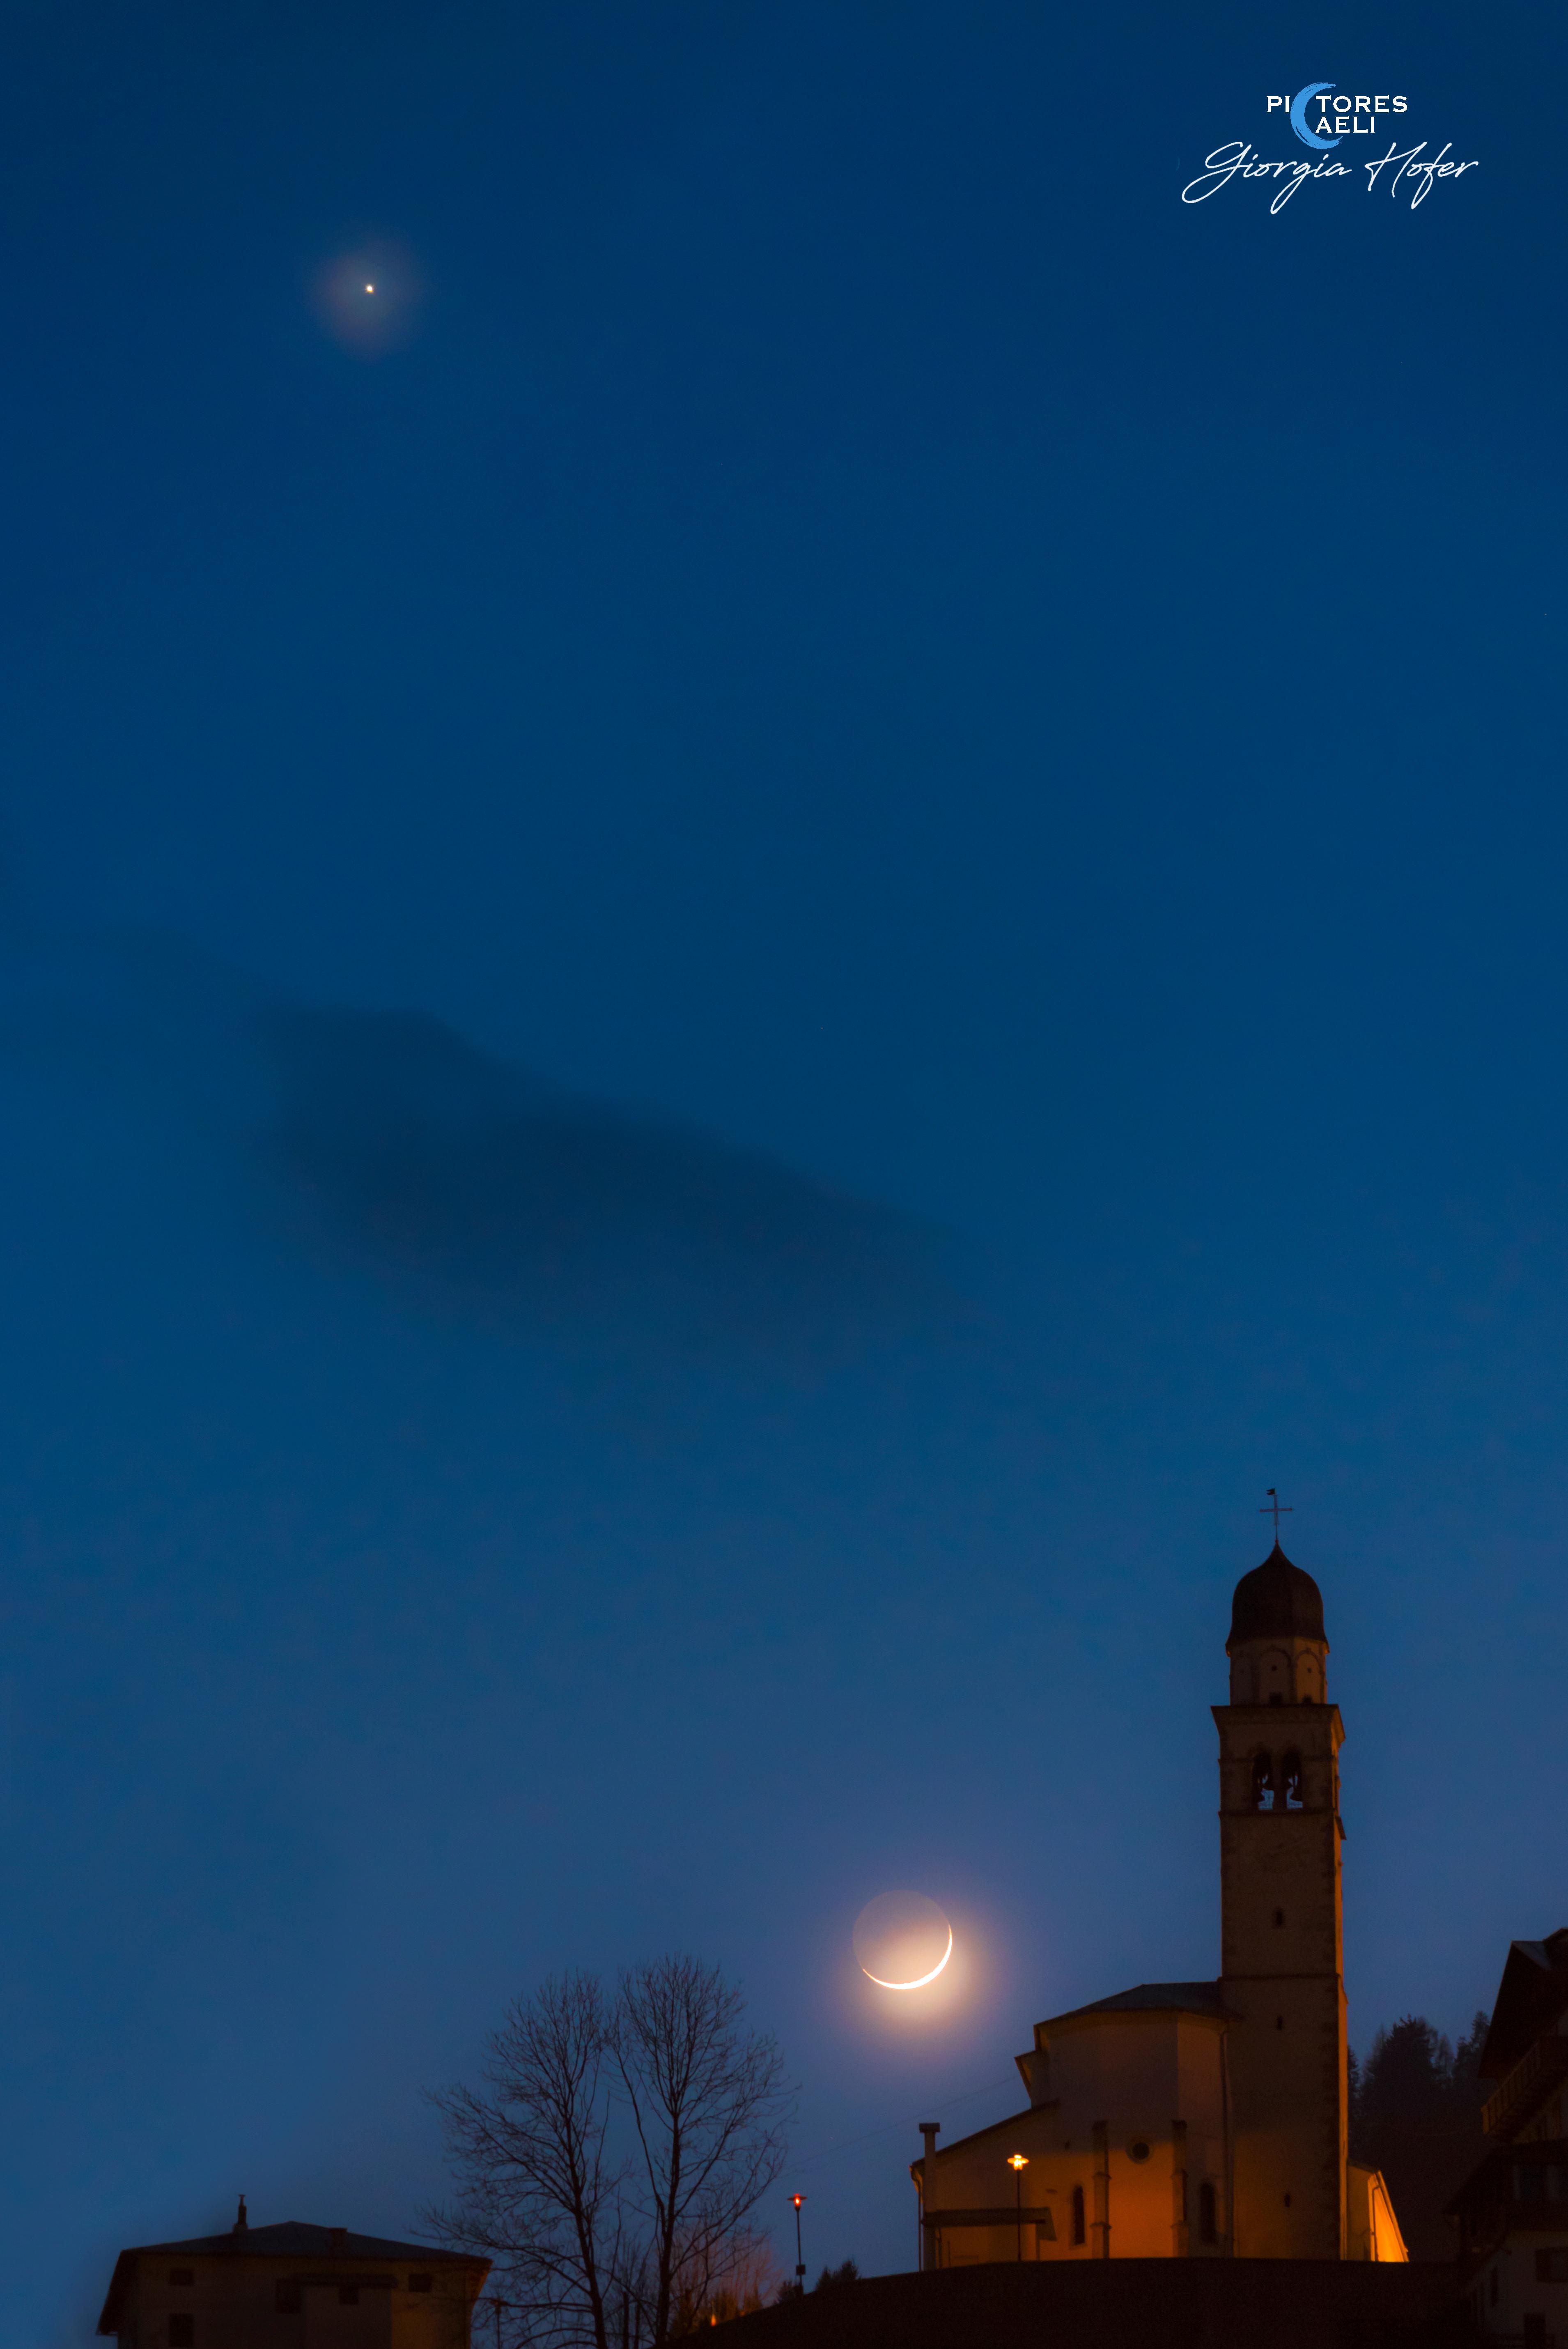 نجم الزُّهرة اللامع، والجانب الليليّ الخافت للقمر، والهلال الأهيَف المُنار بالشمس، متموضعين في سماء المساء إلى جانب برج كنيسة.